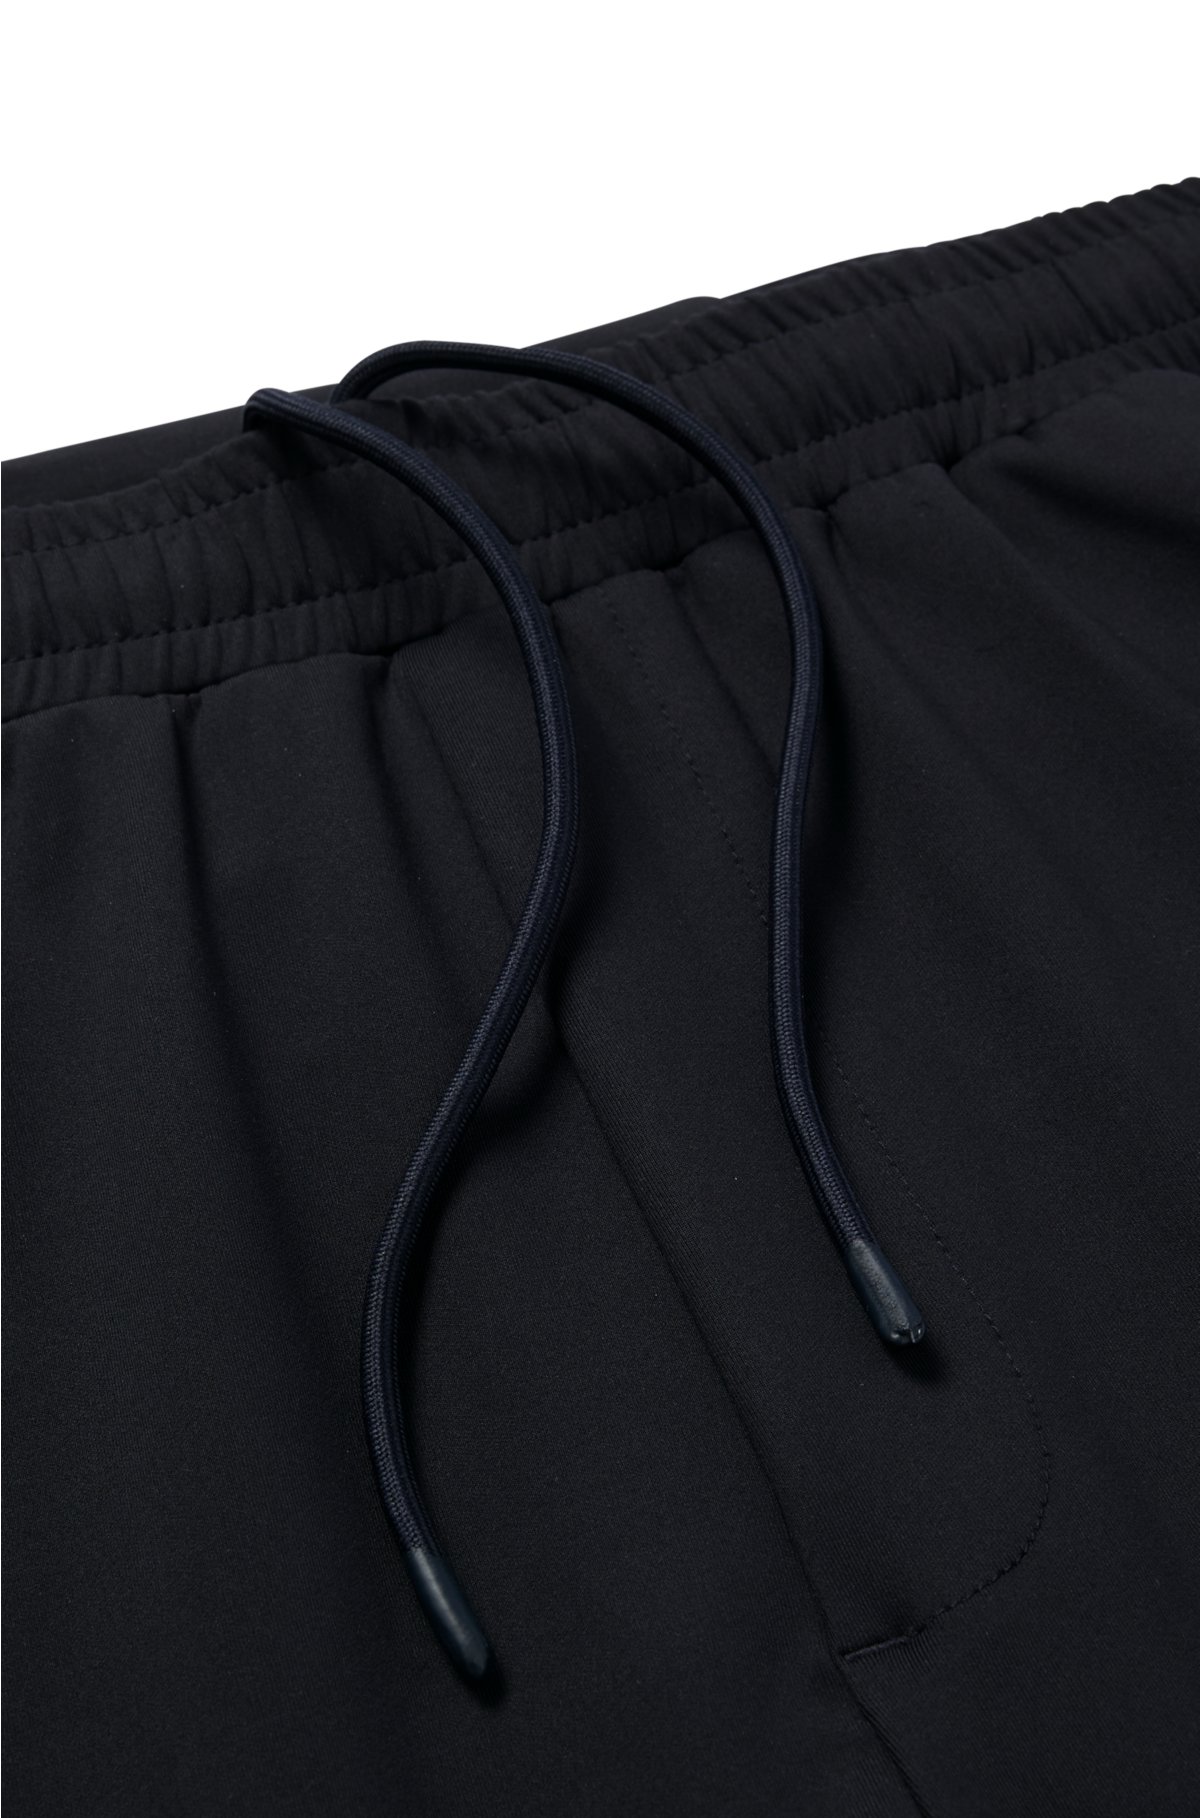 Pantalones de chándal con bajos ceñidos y cordón de ajuste